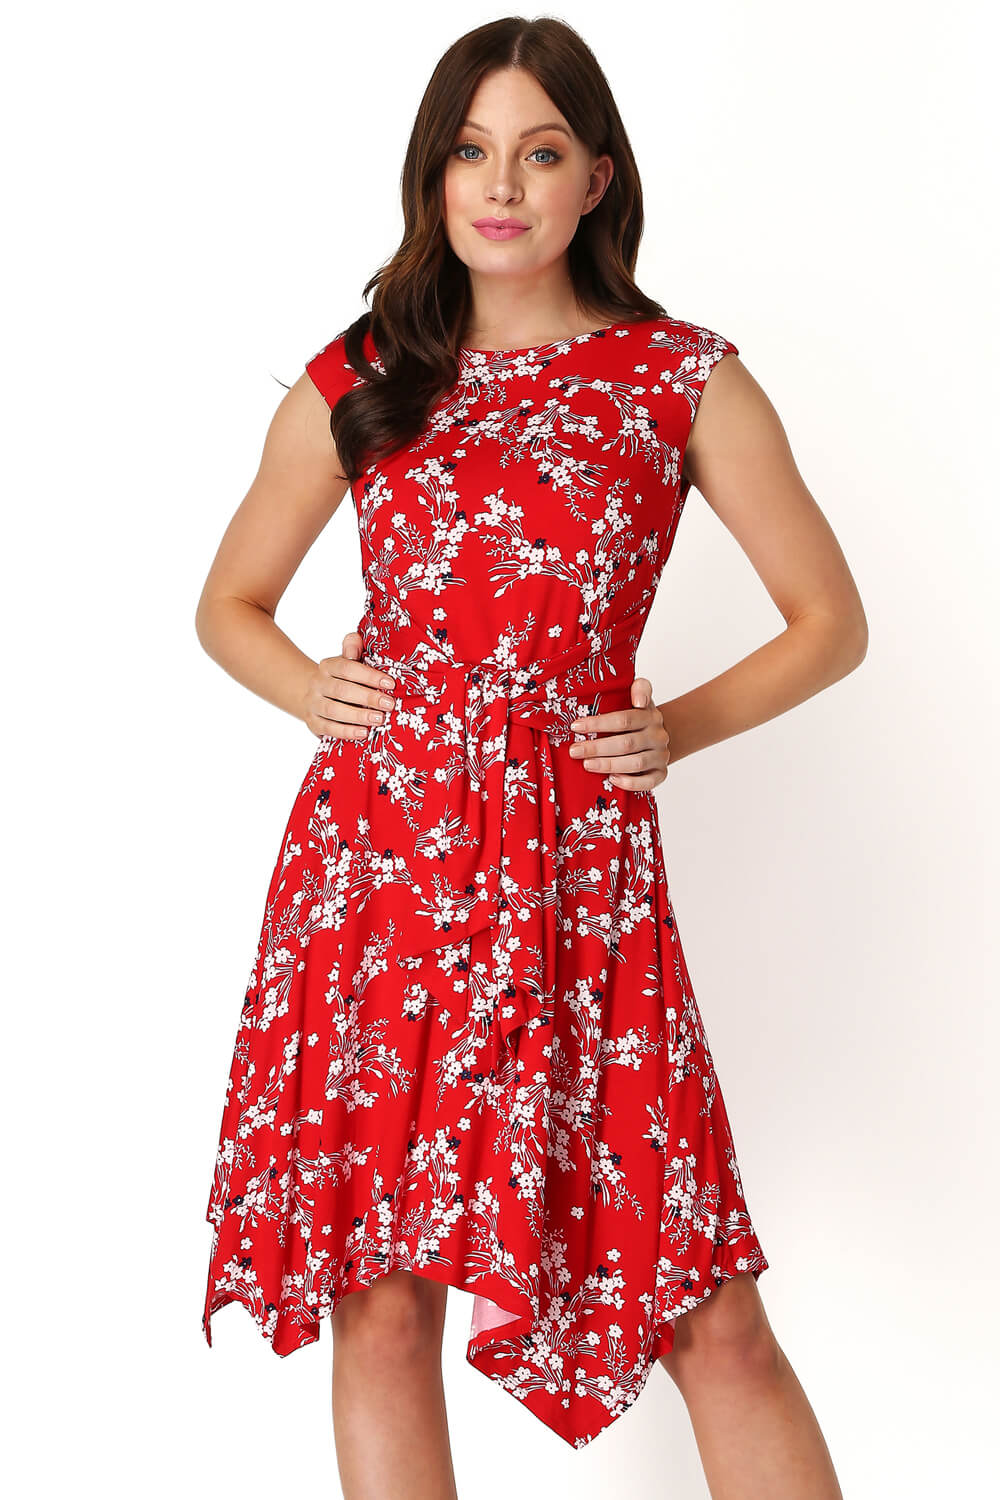 red floral dress uk